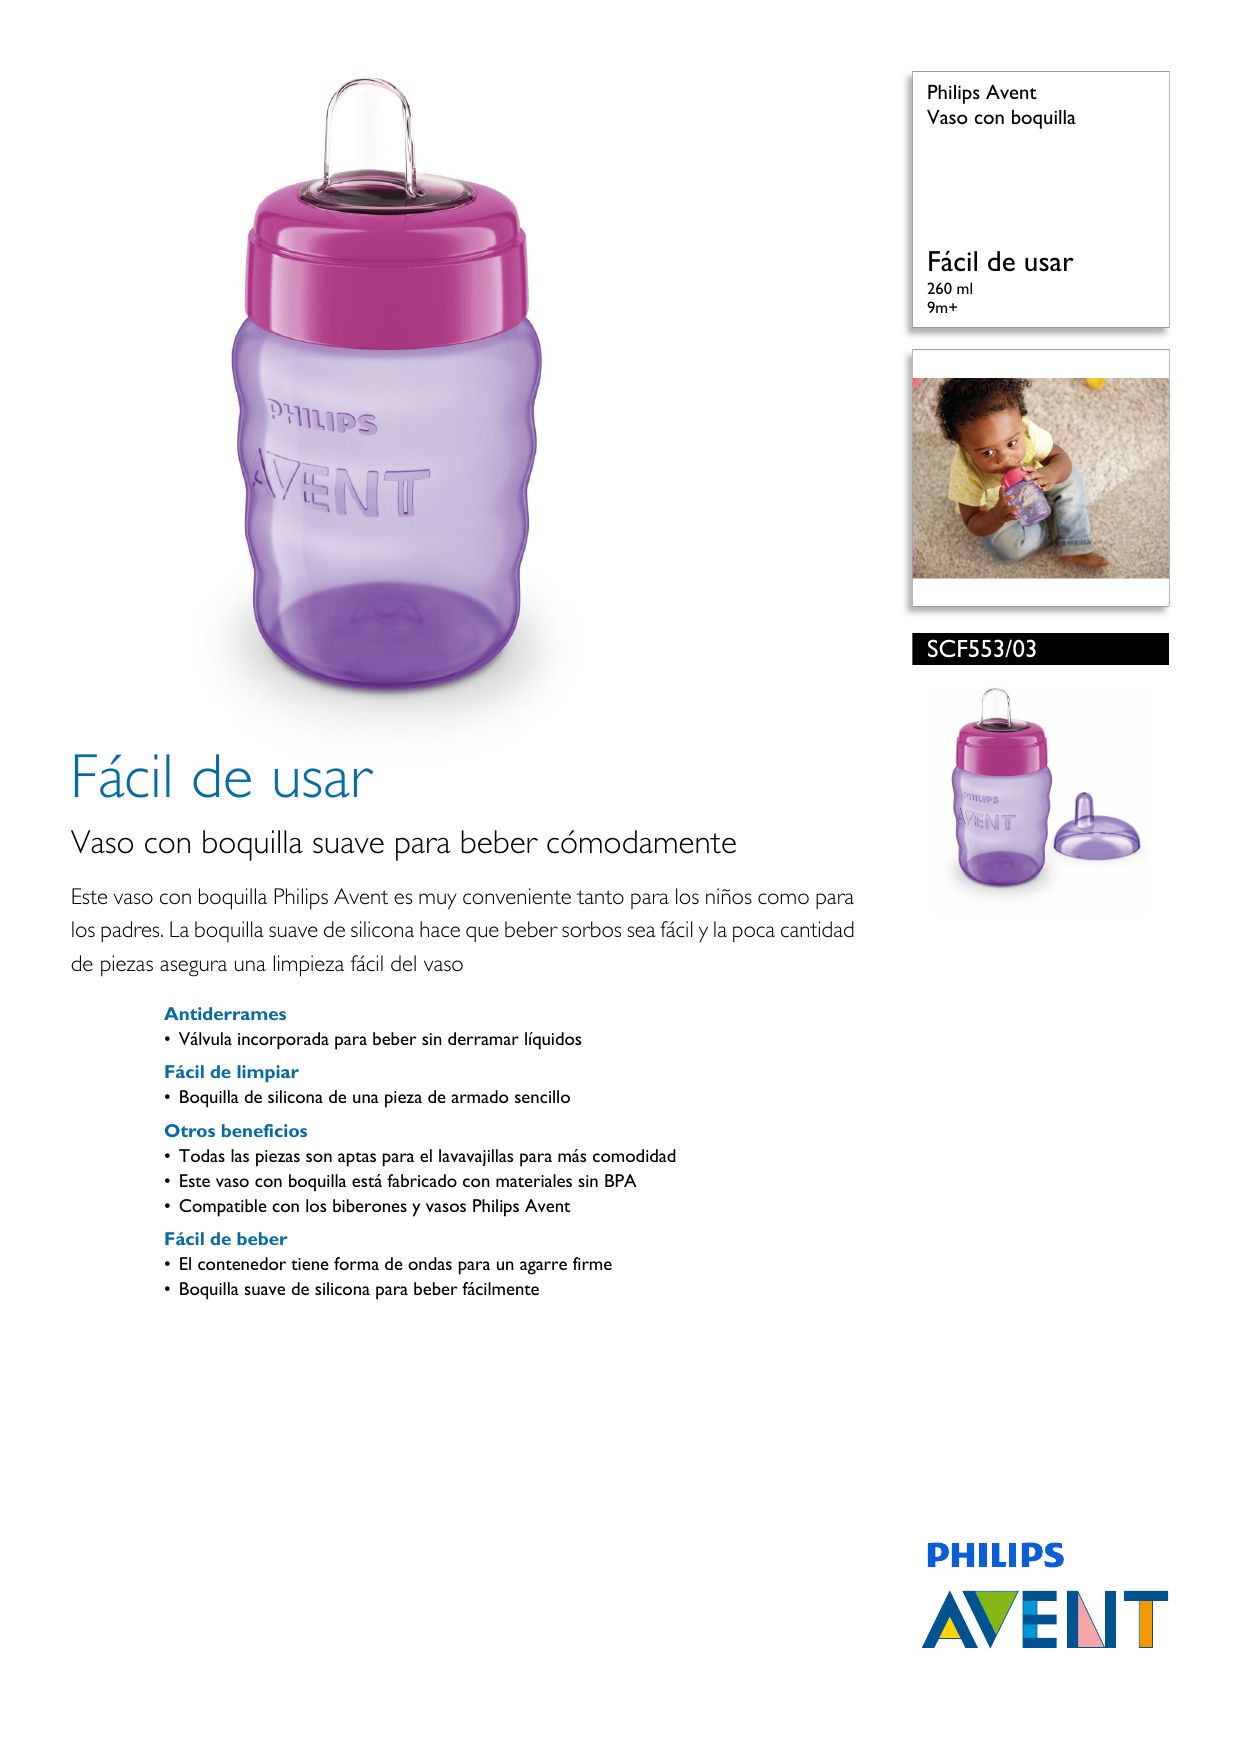 Philips Avent SCF551/05 - Vaso con boquilla de silicona para niño